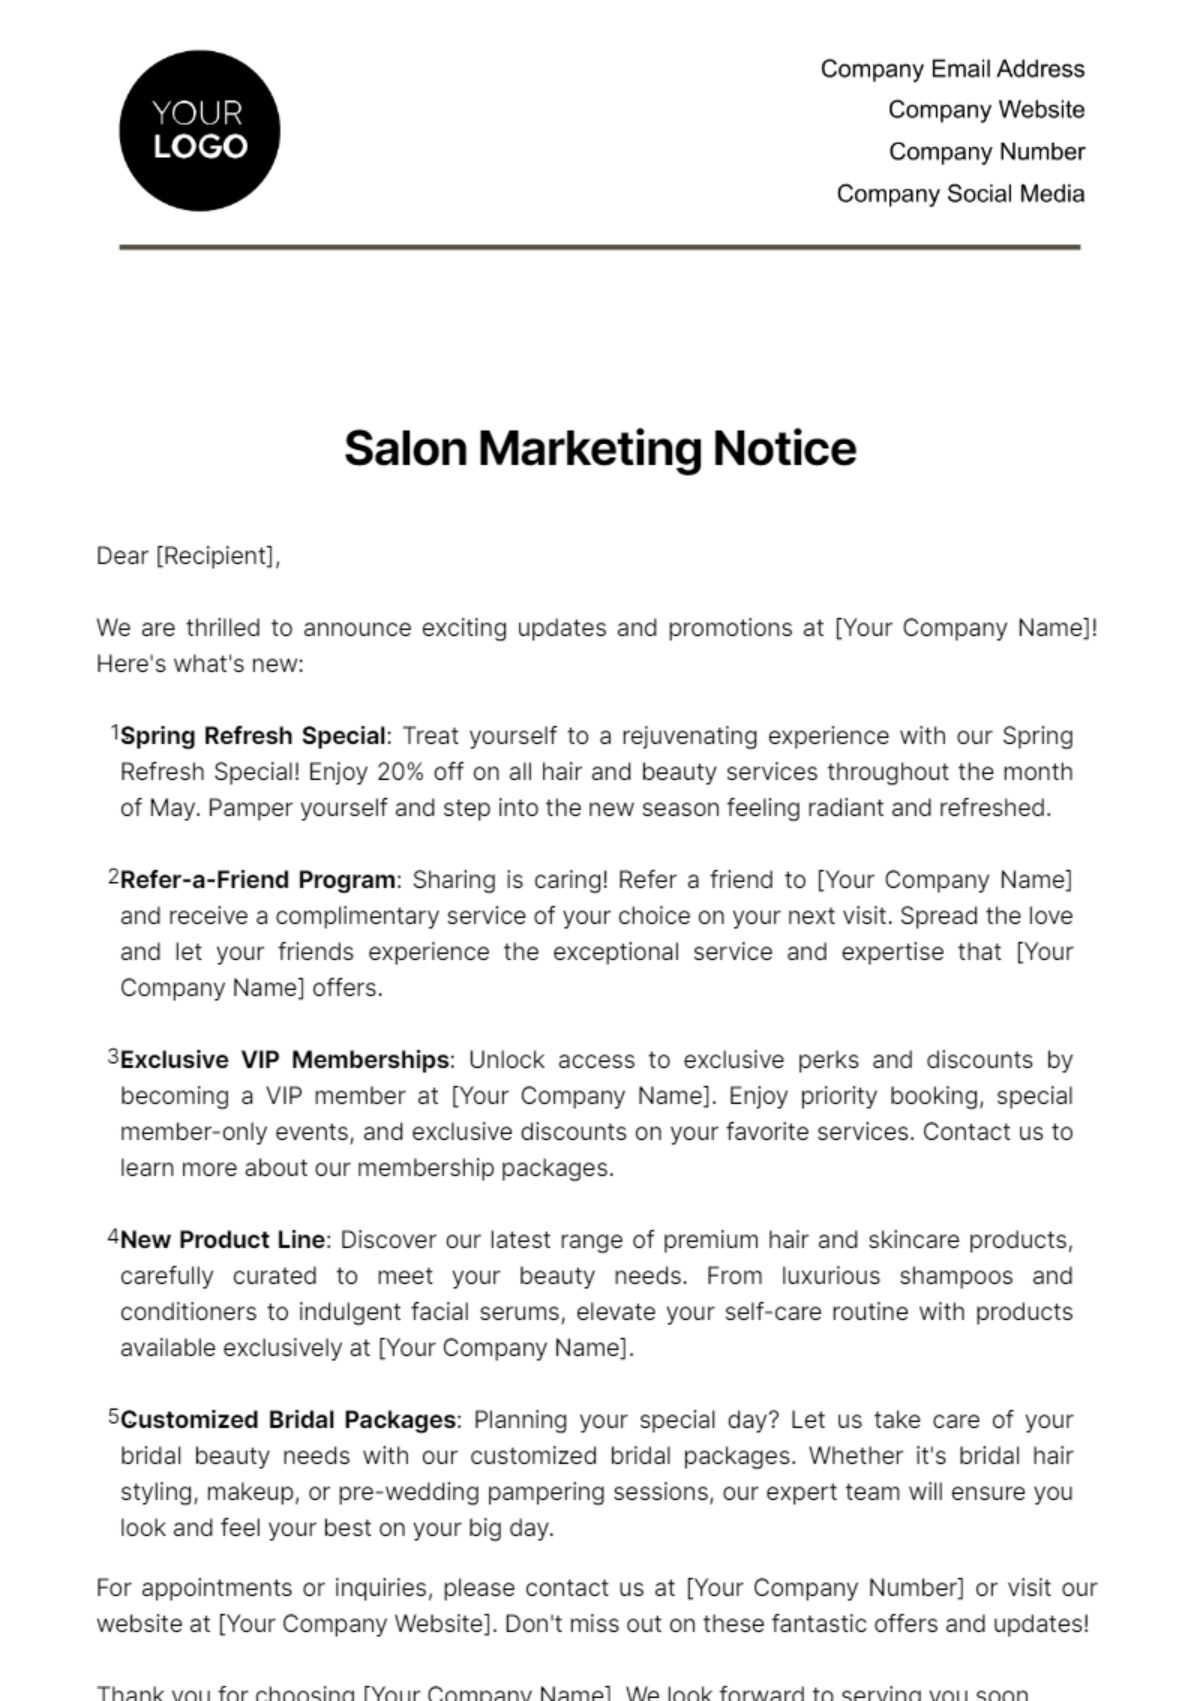 Salon Marketing Notice Template